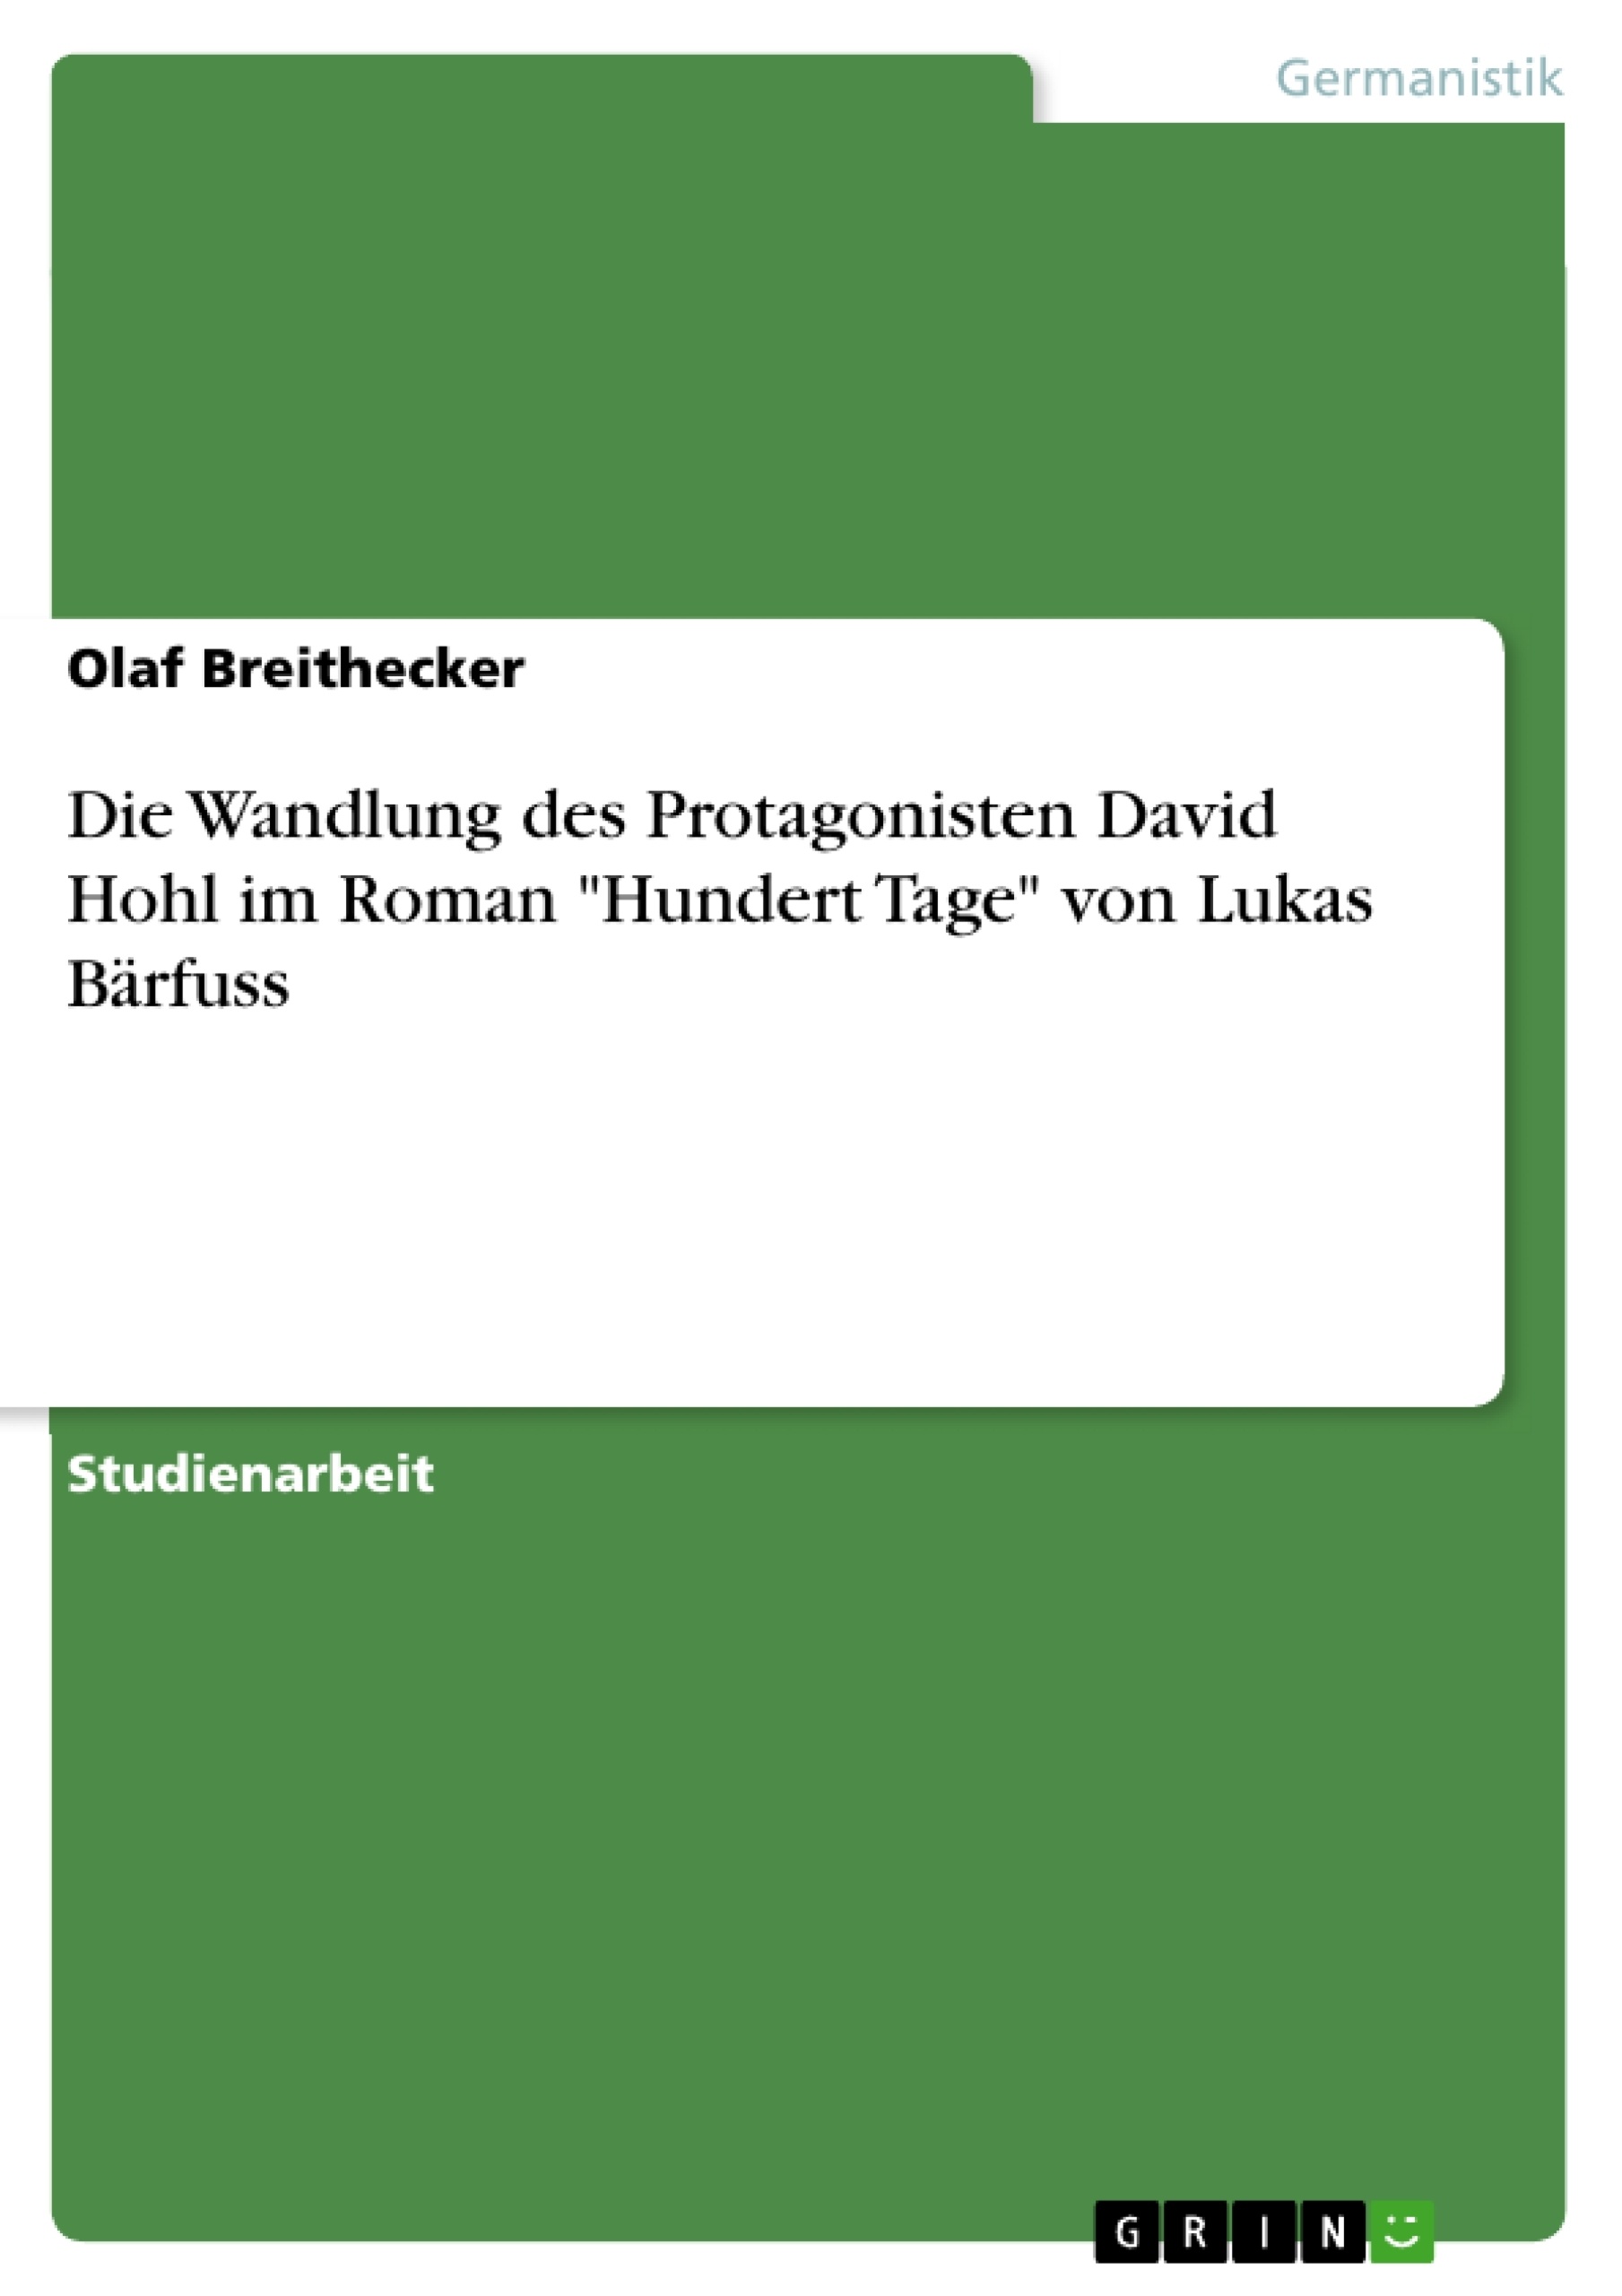 Title: Die Wandlung des Protagonisten David Hohl im Roman "Hundert Tage" von Lukas Bärfuss